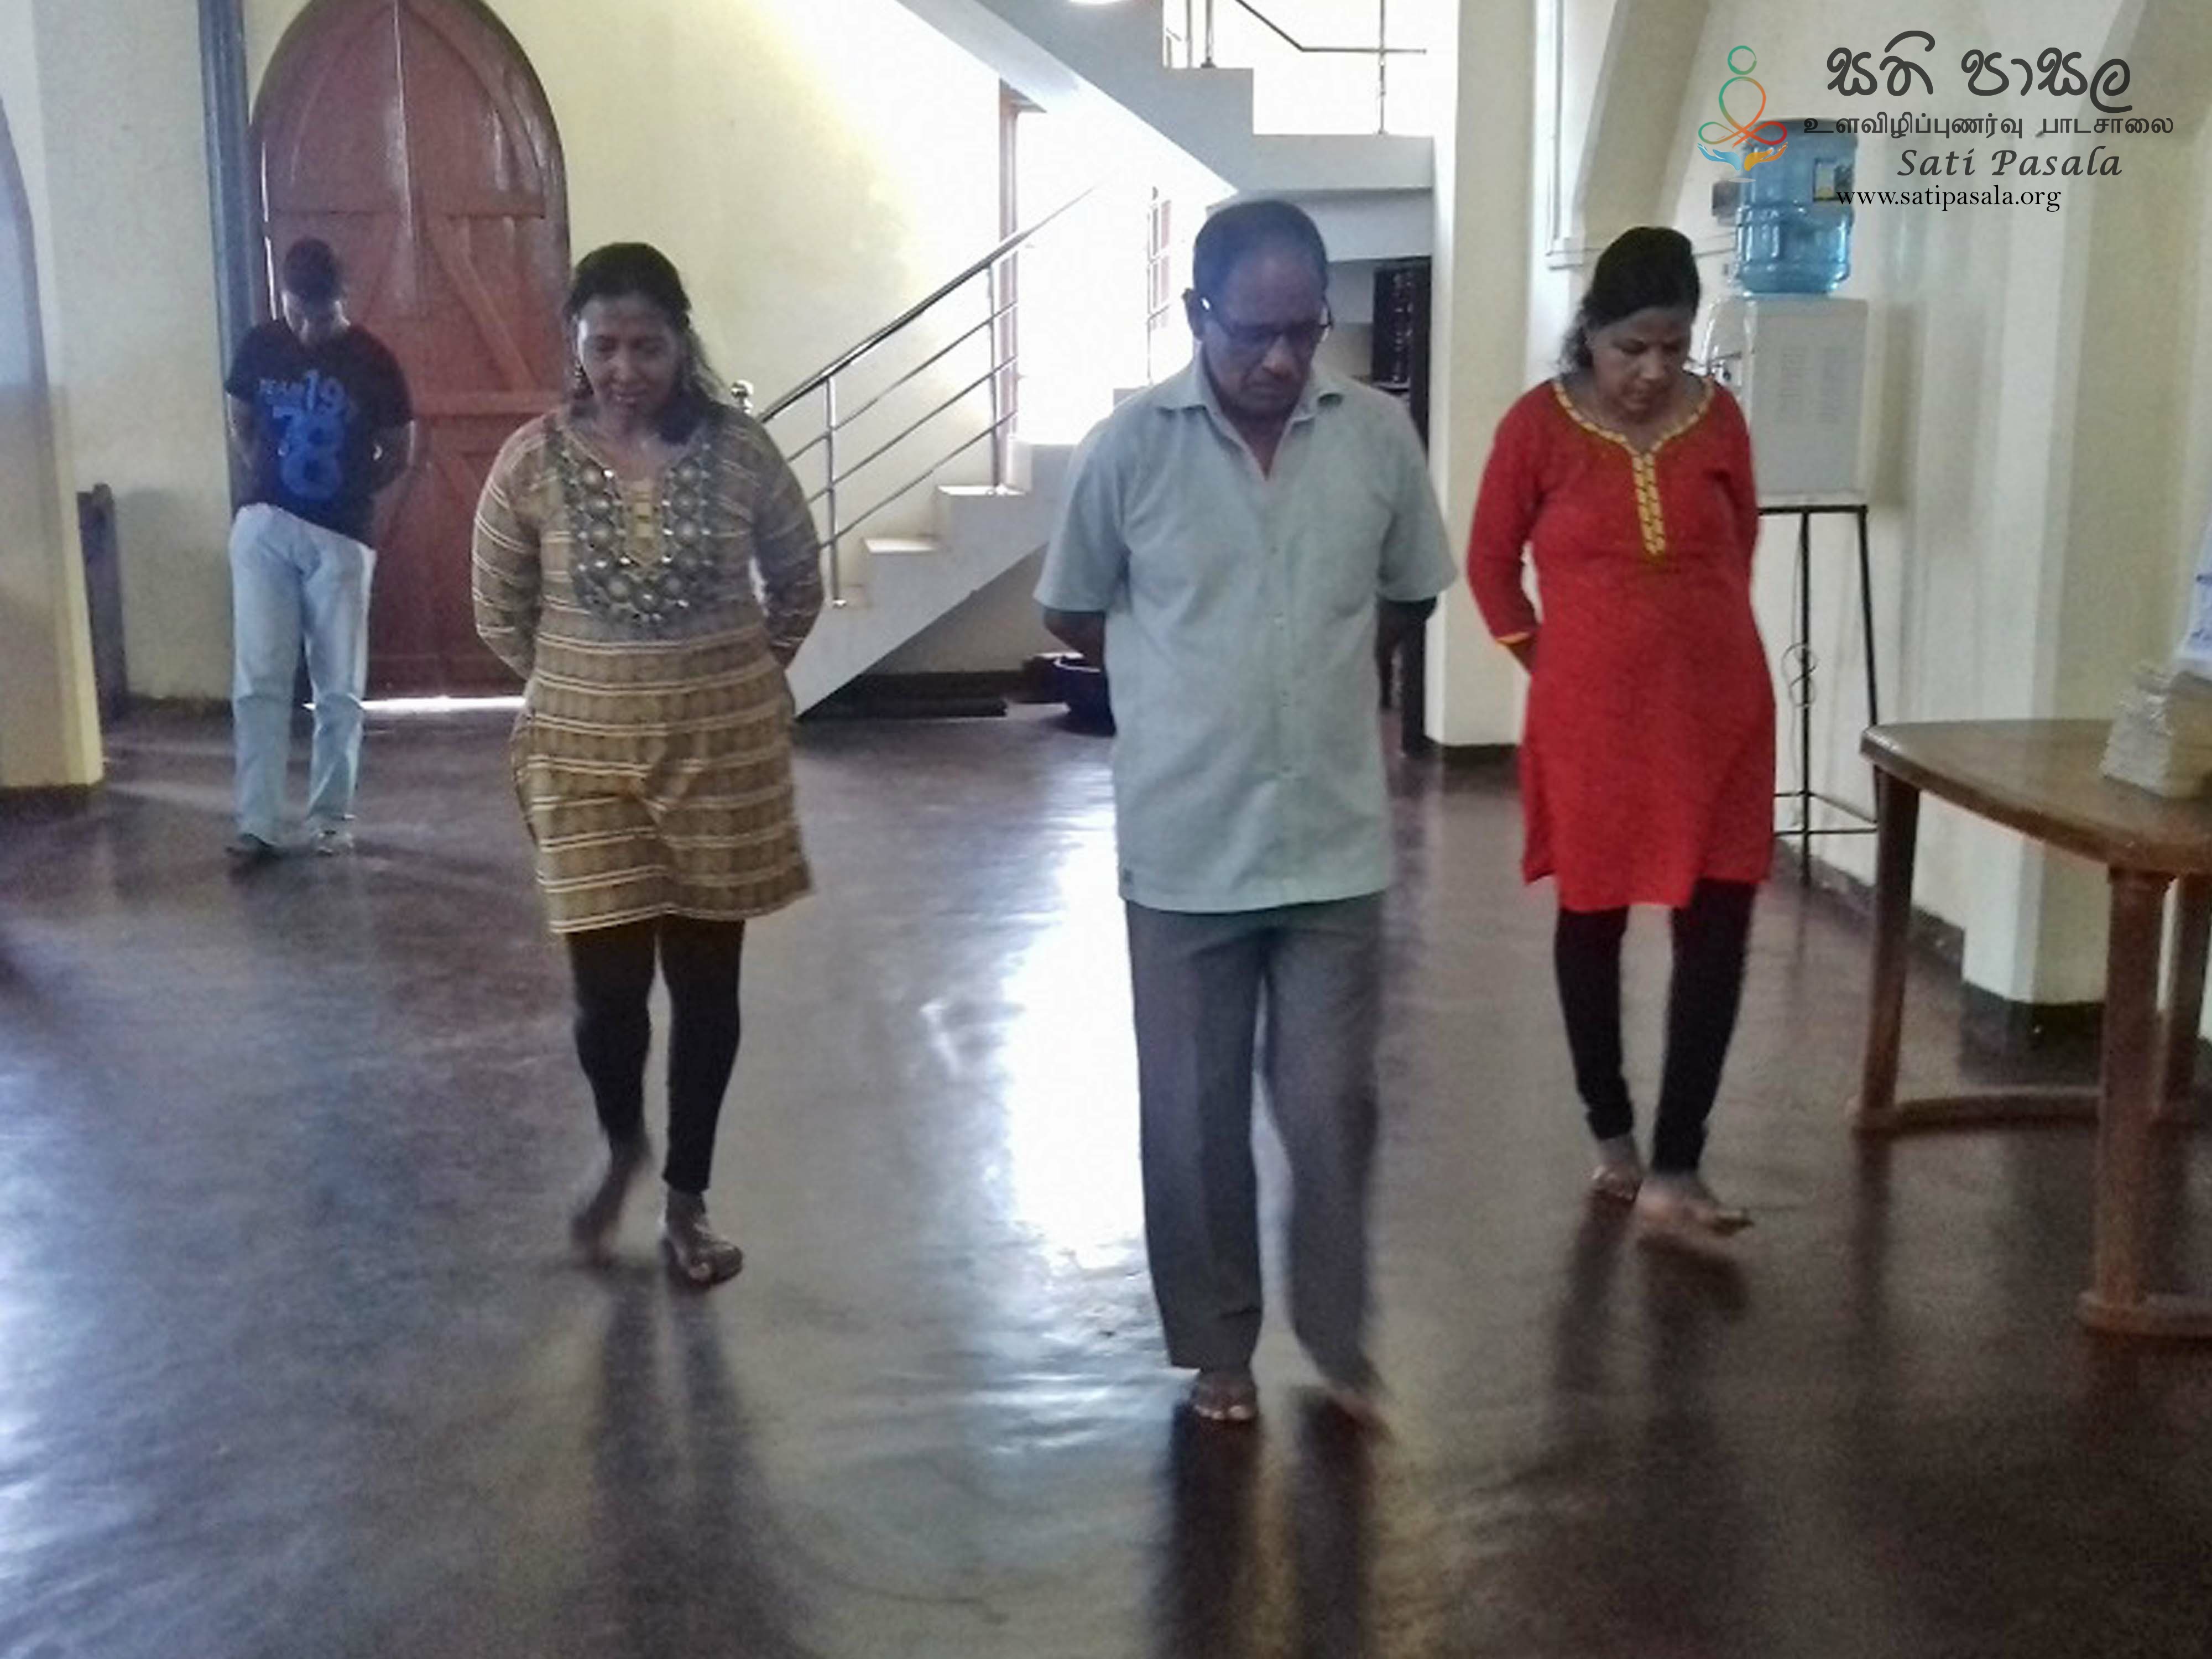 Sati Pasala Mindfulness Program at Christ Church, Kandy